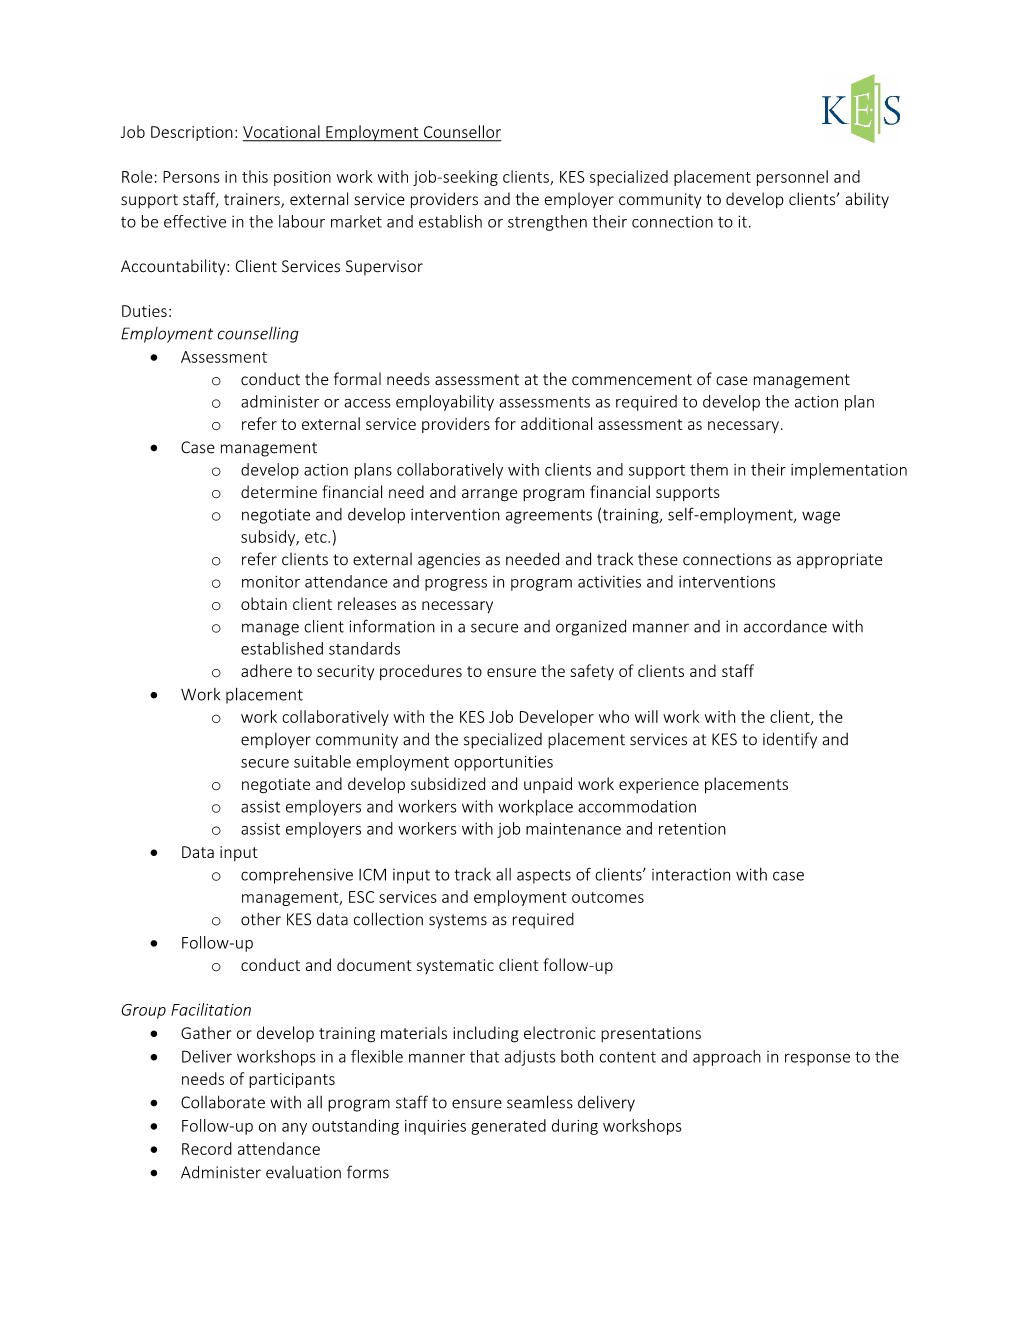 Job Description: Vocational Employment Counsellor Role